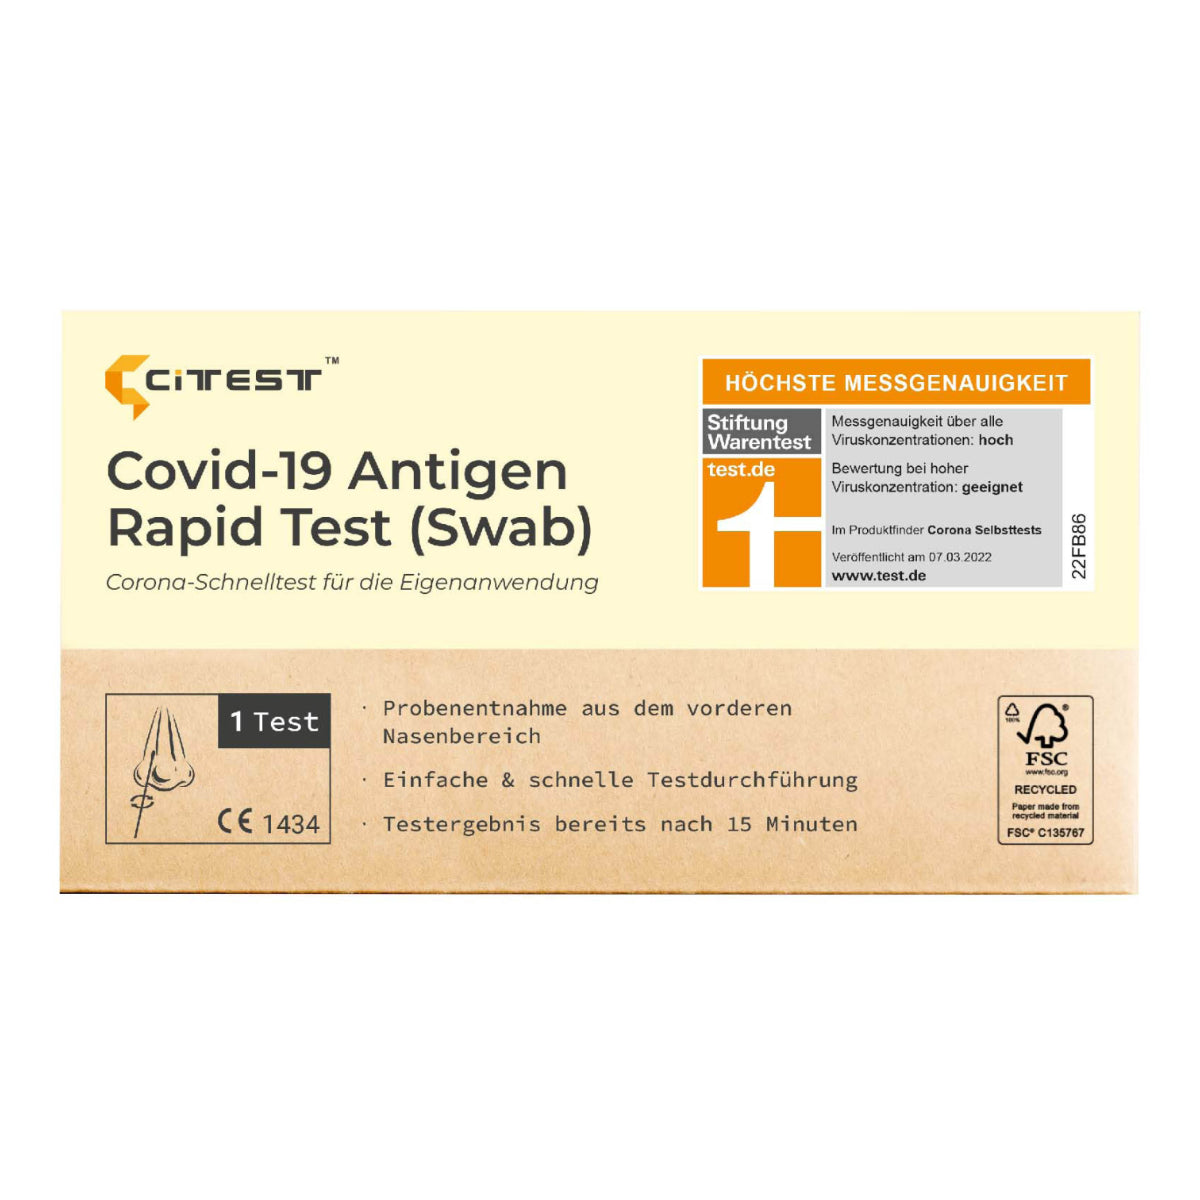 10x CITEST, COVID-19 Antigen-Schnelltest (swab/Nasenabstrich), einzelverpackt, 10 Stück